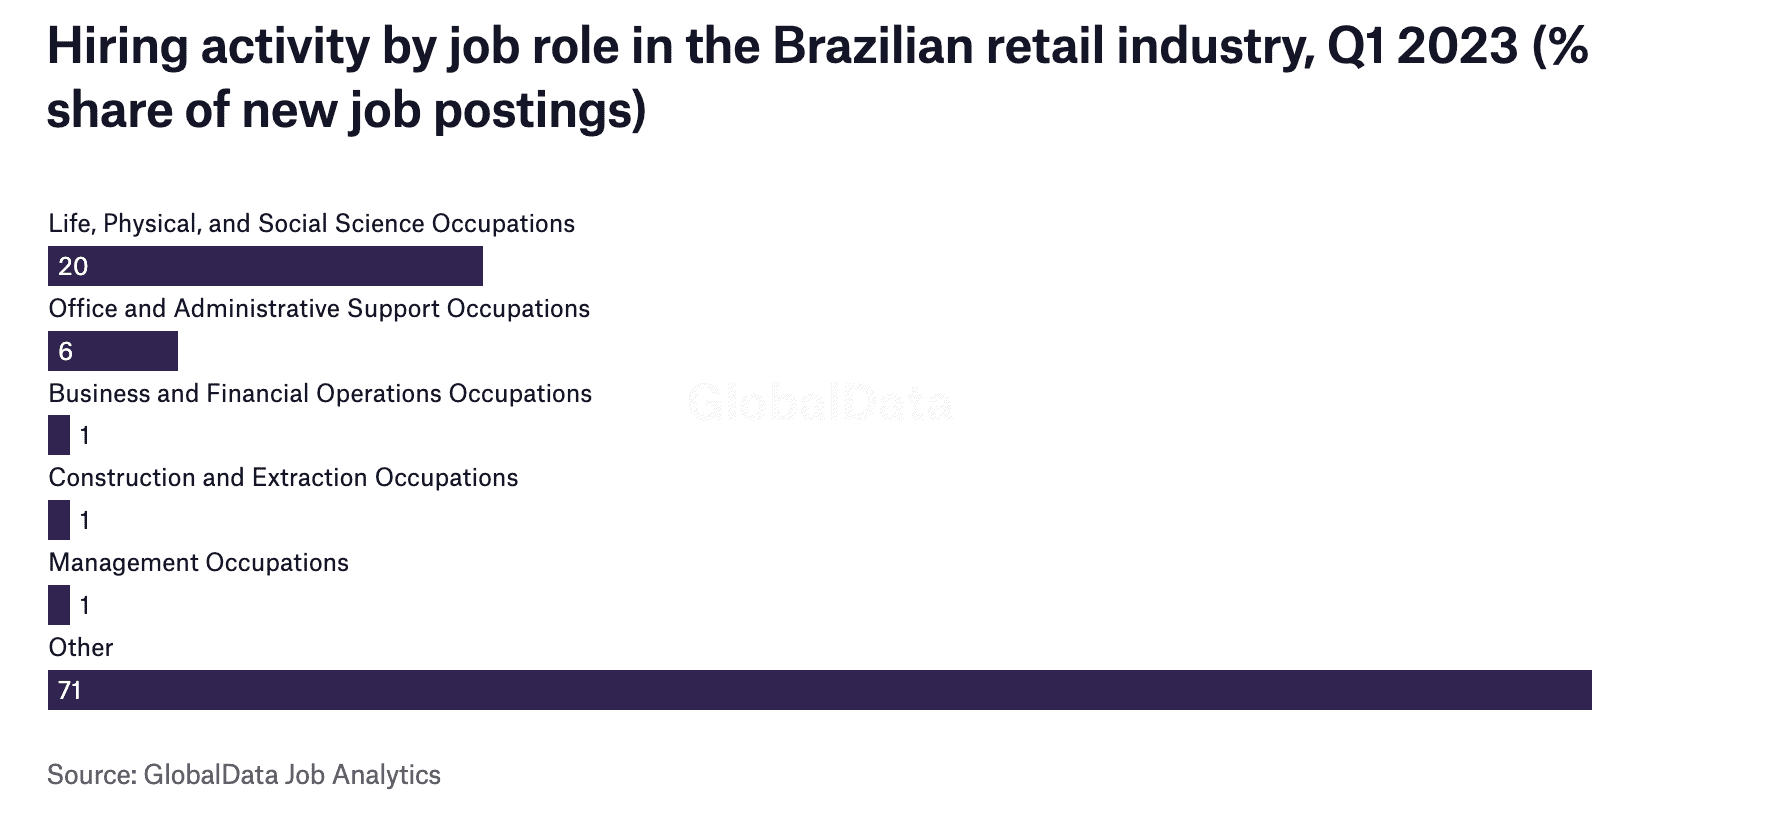 Contratações por participação no varejo brasileiro, 1º trimestre de 2023 (% de participação em novas ofertas de emprego)